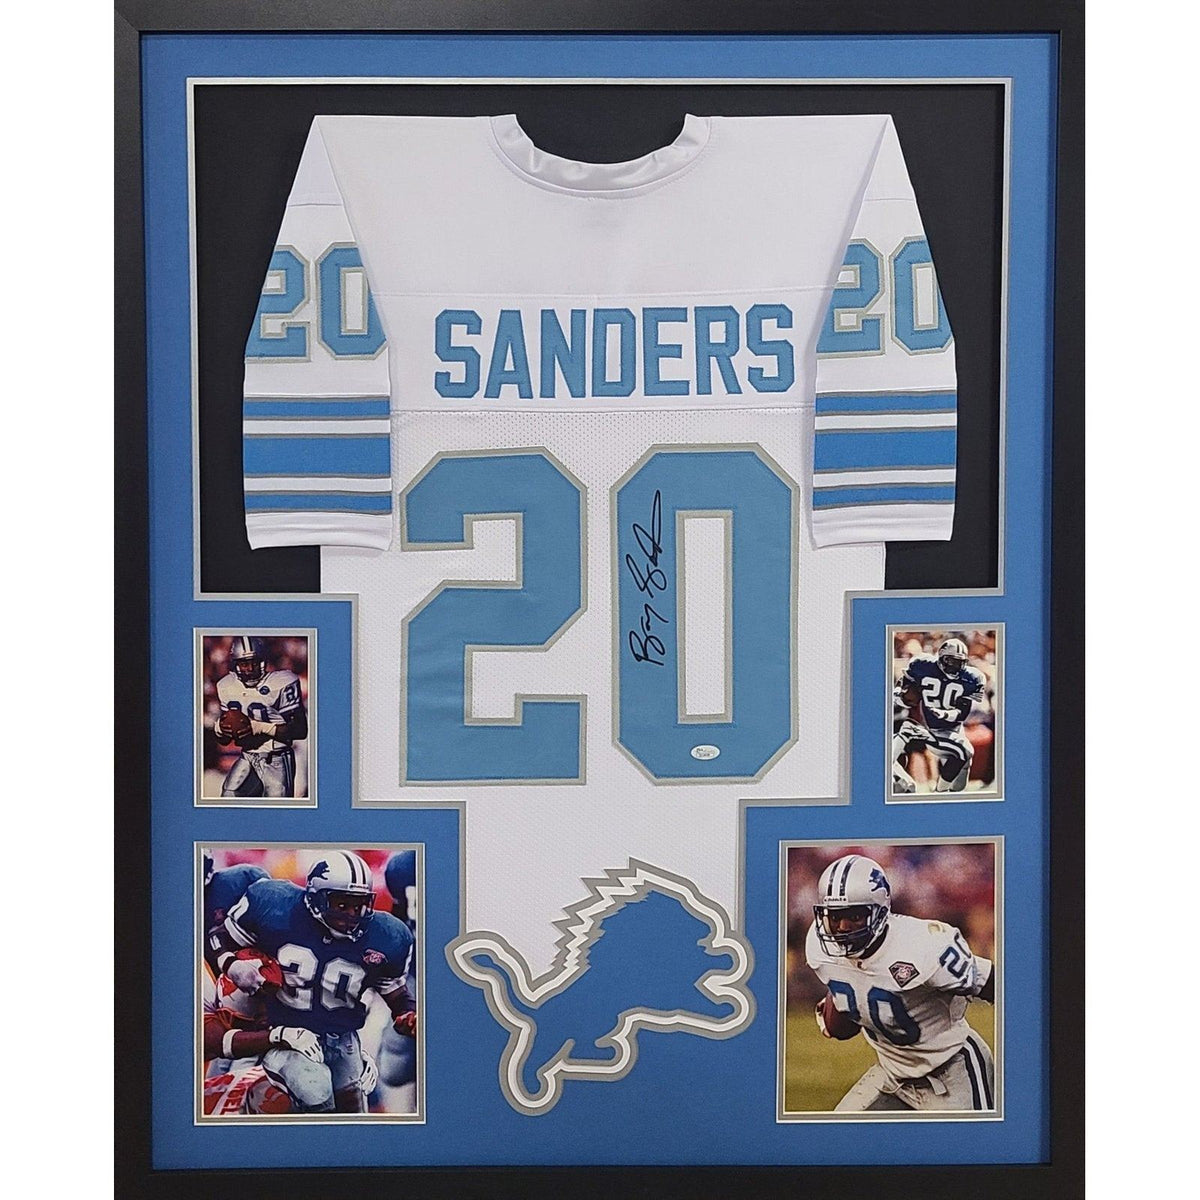 Barry Sanders Signed Framed White Jersey JSA Autographed Detroit Lions